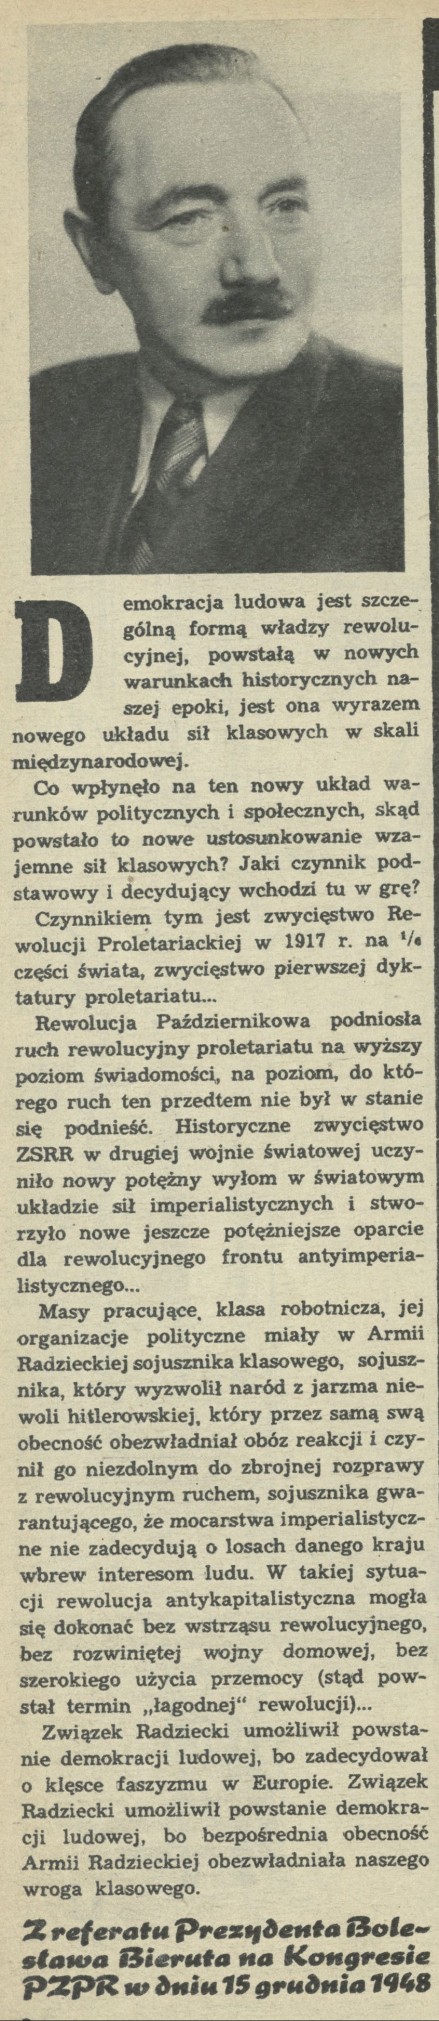 Z referatu Prezydenta Bolesława Bieruta